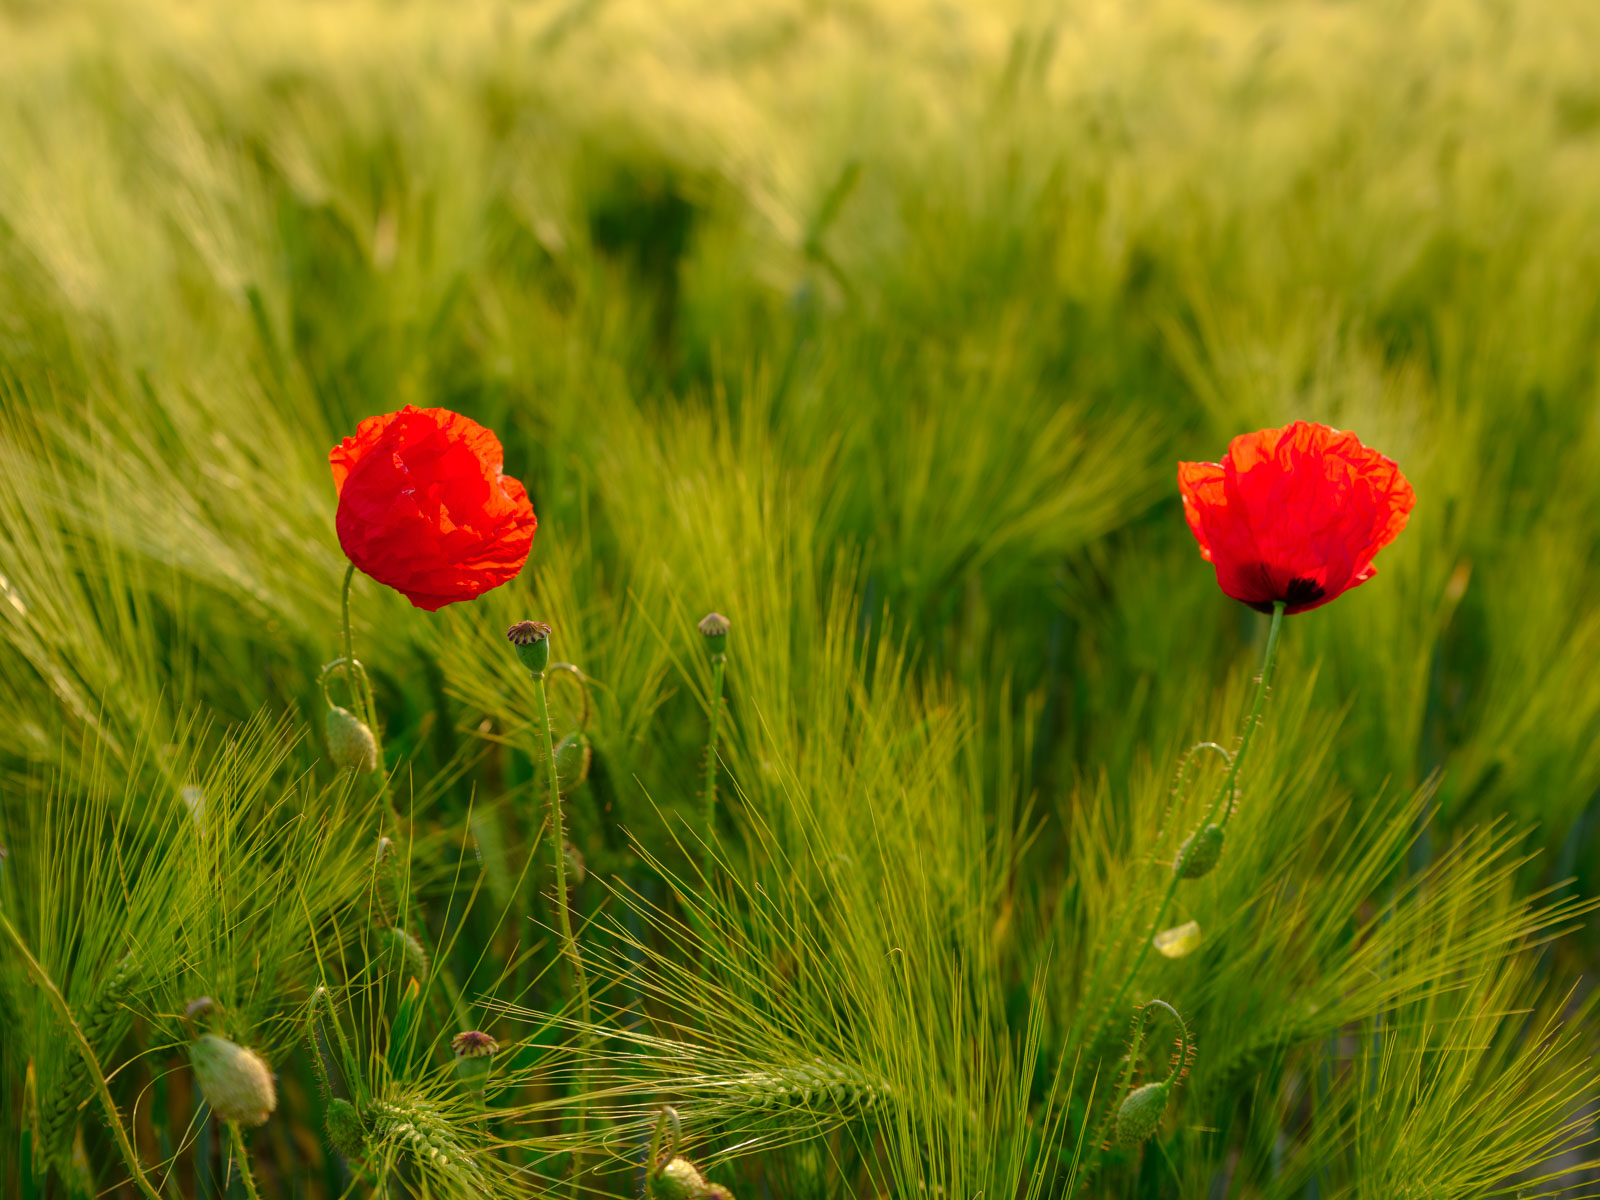 Red poppy in a wheat field in 'Brönninghausen' (Bielefeld, Germany).